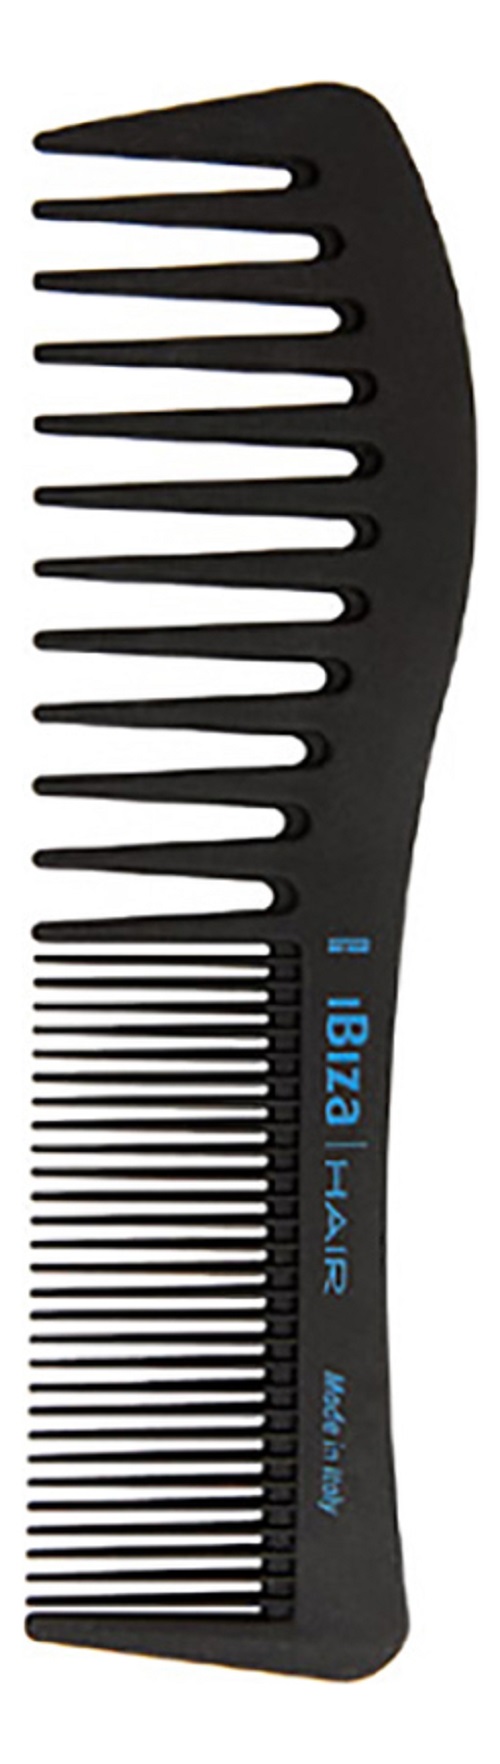 Карбоновая расческа для волос Ibiza Hair Carbon Comb Wave волнистая расческа для стрижки и укладки карбоновая черная 21см